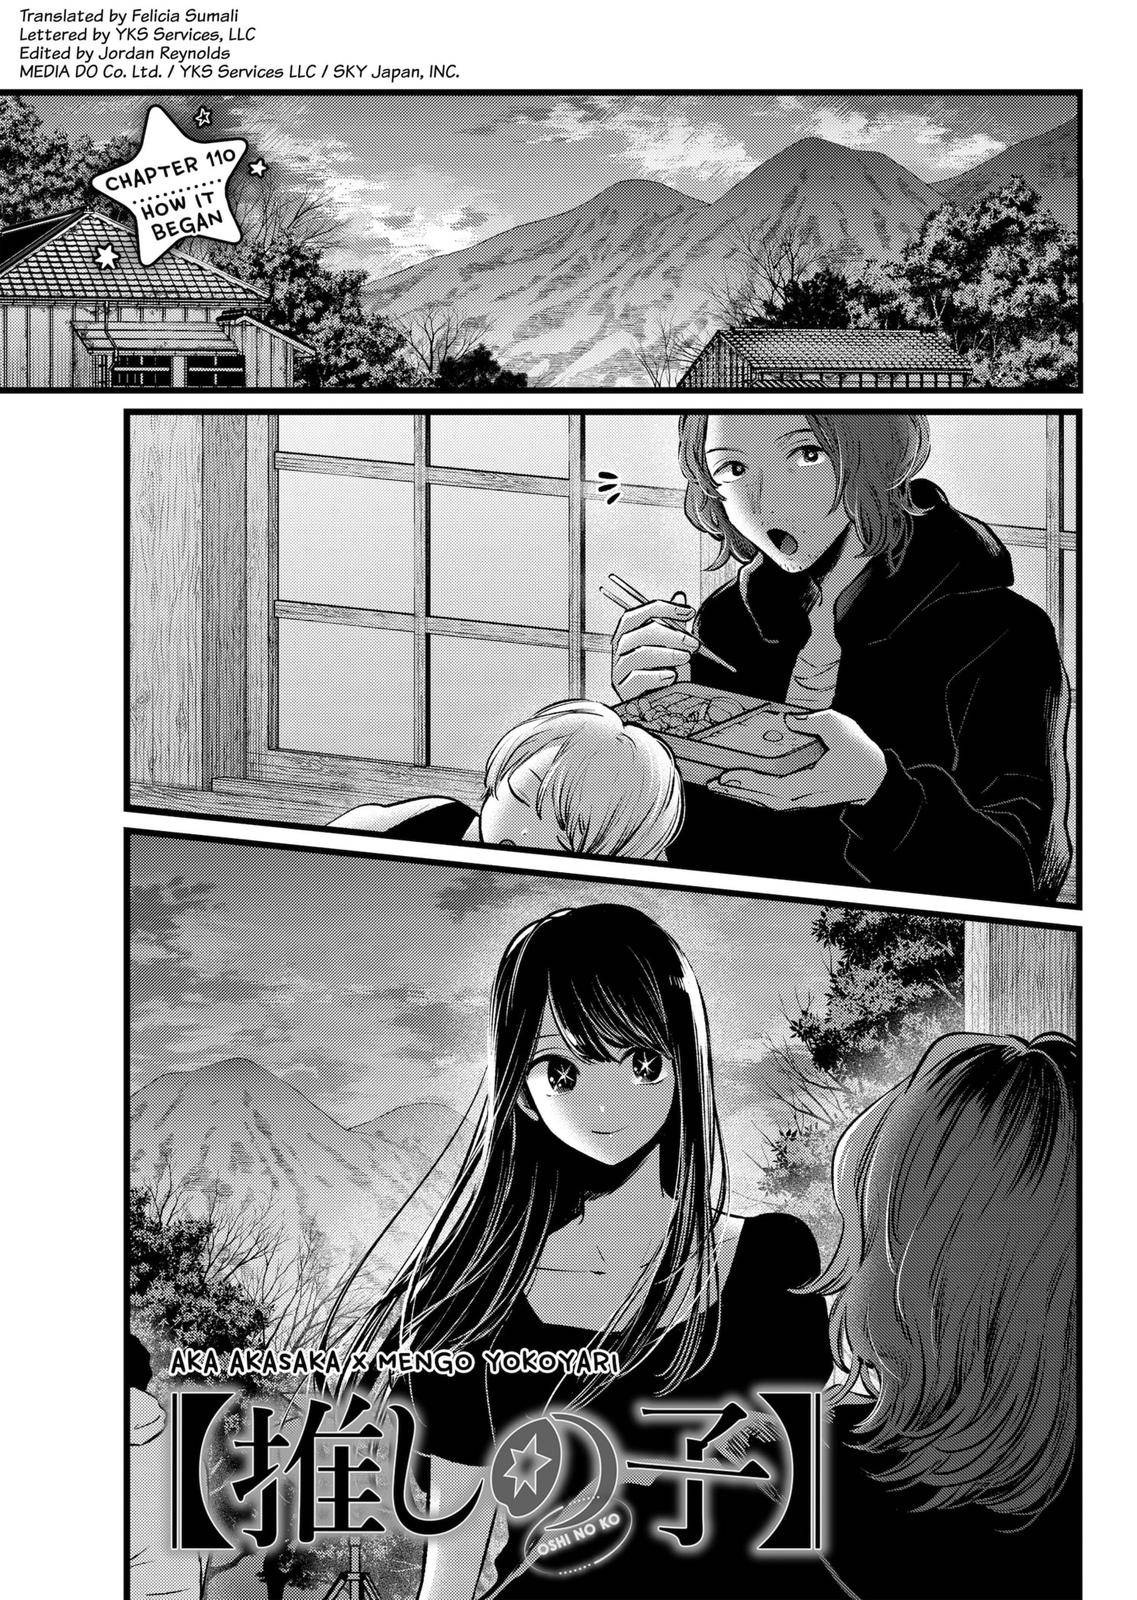 Oshi no Ko, Chapter 116 - Oshi no Ko Manga Online